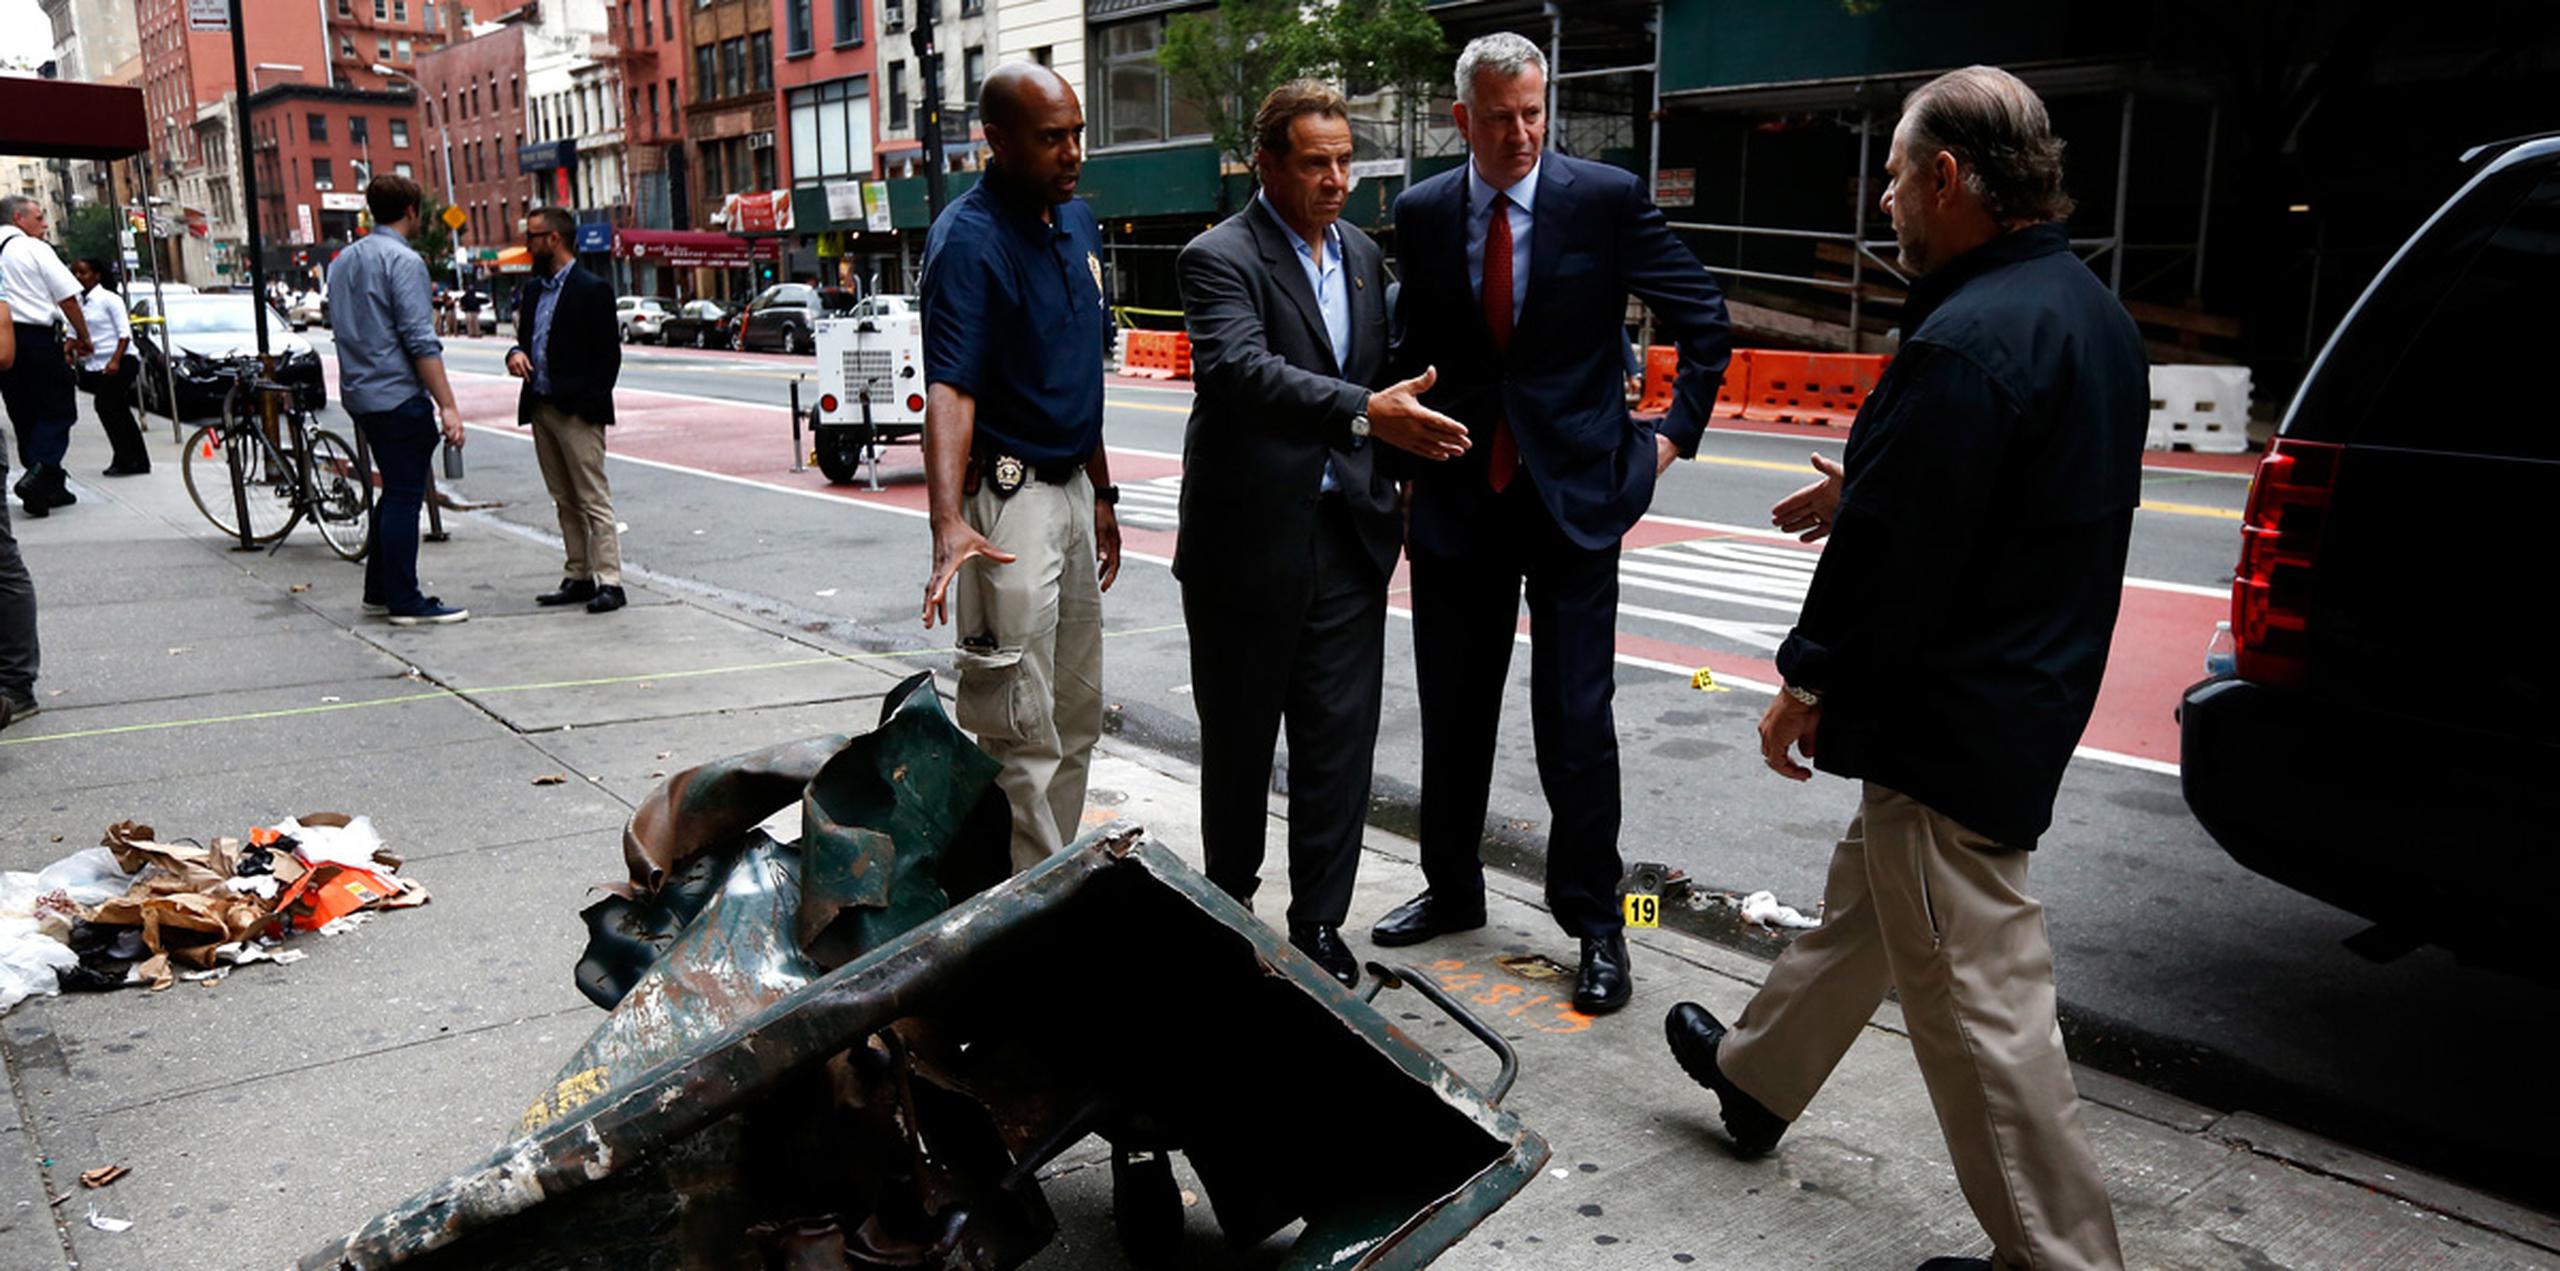 El gobernador del estado, Andrew Cuomo, dijo el sábado que la explosión de Manhattan que hirió a 29 personas no parecía estar relacionada con el terrorismo internacional. (AP)